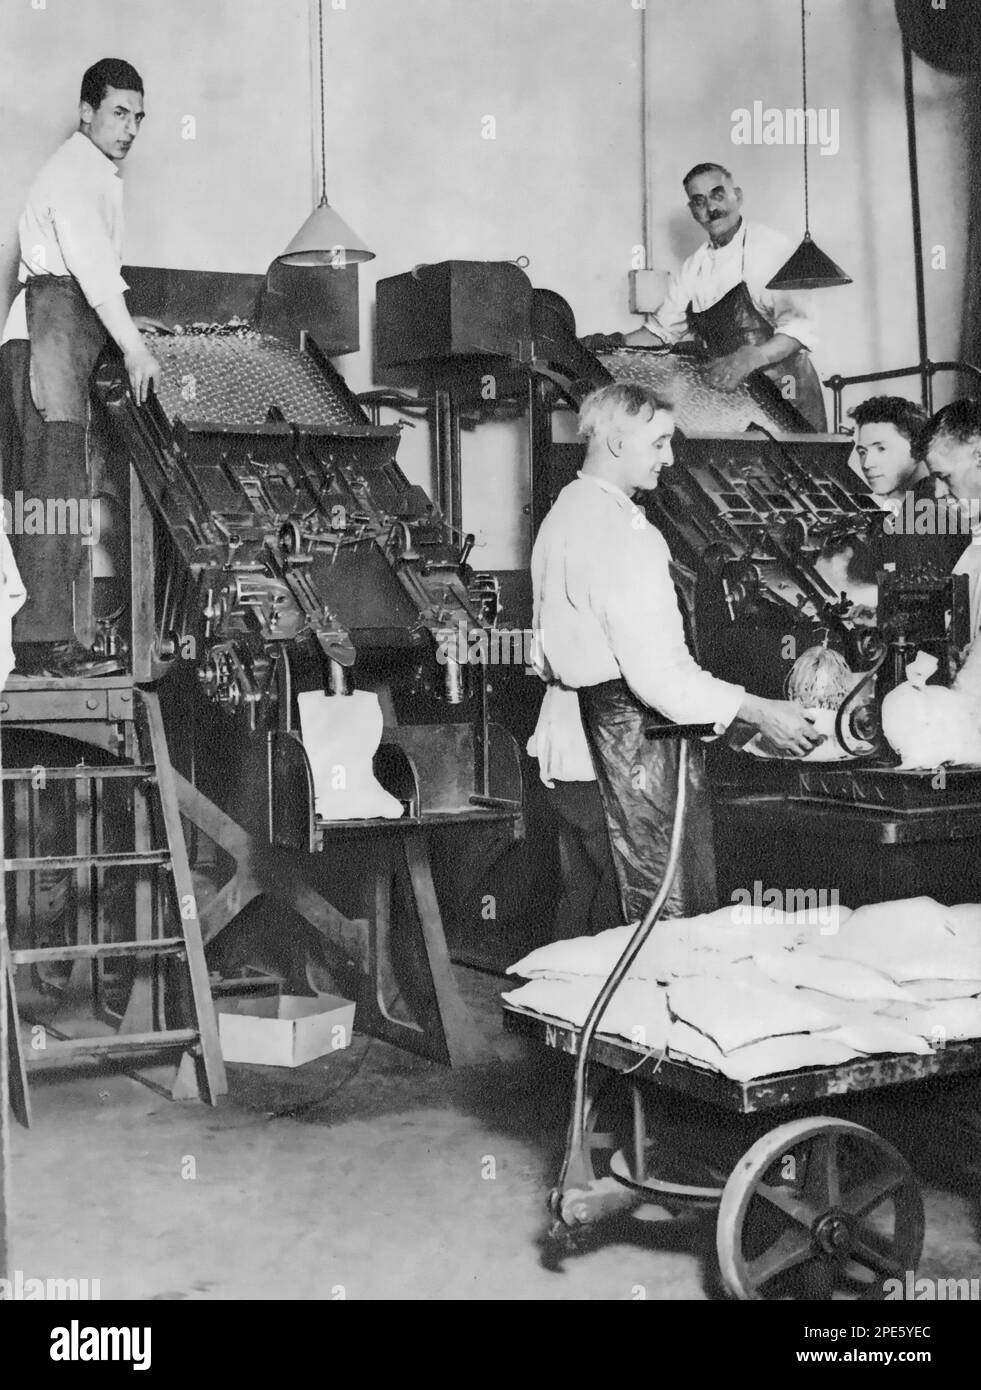 The Telling Room of the Royal Mint, Tower Hill, Londra, c1933. Gli uomini contano monete usando una macchina automatica di telling alla Zecca reale. Foto Stock